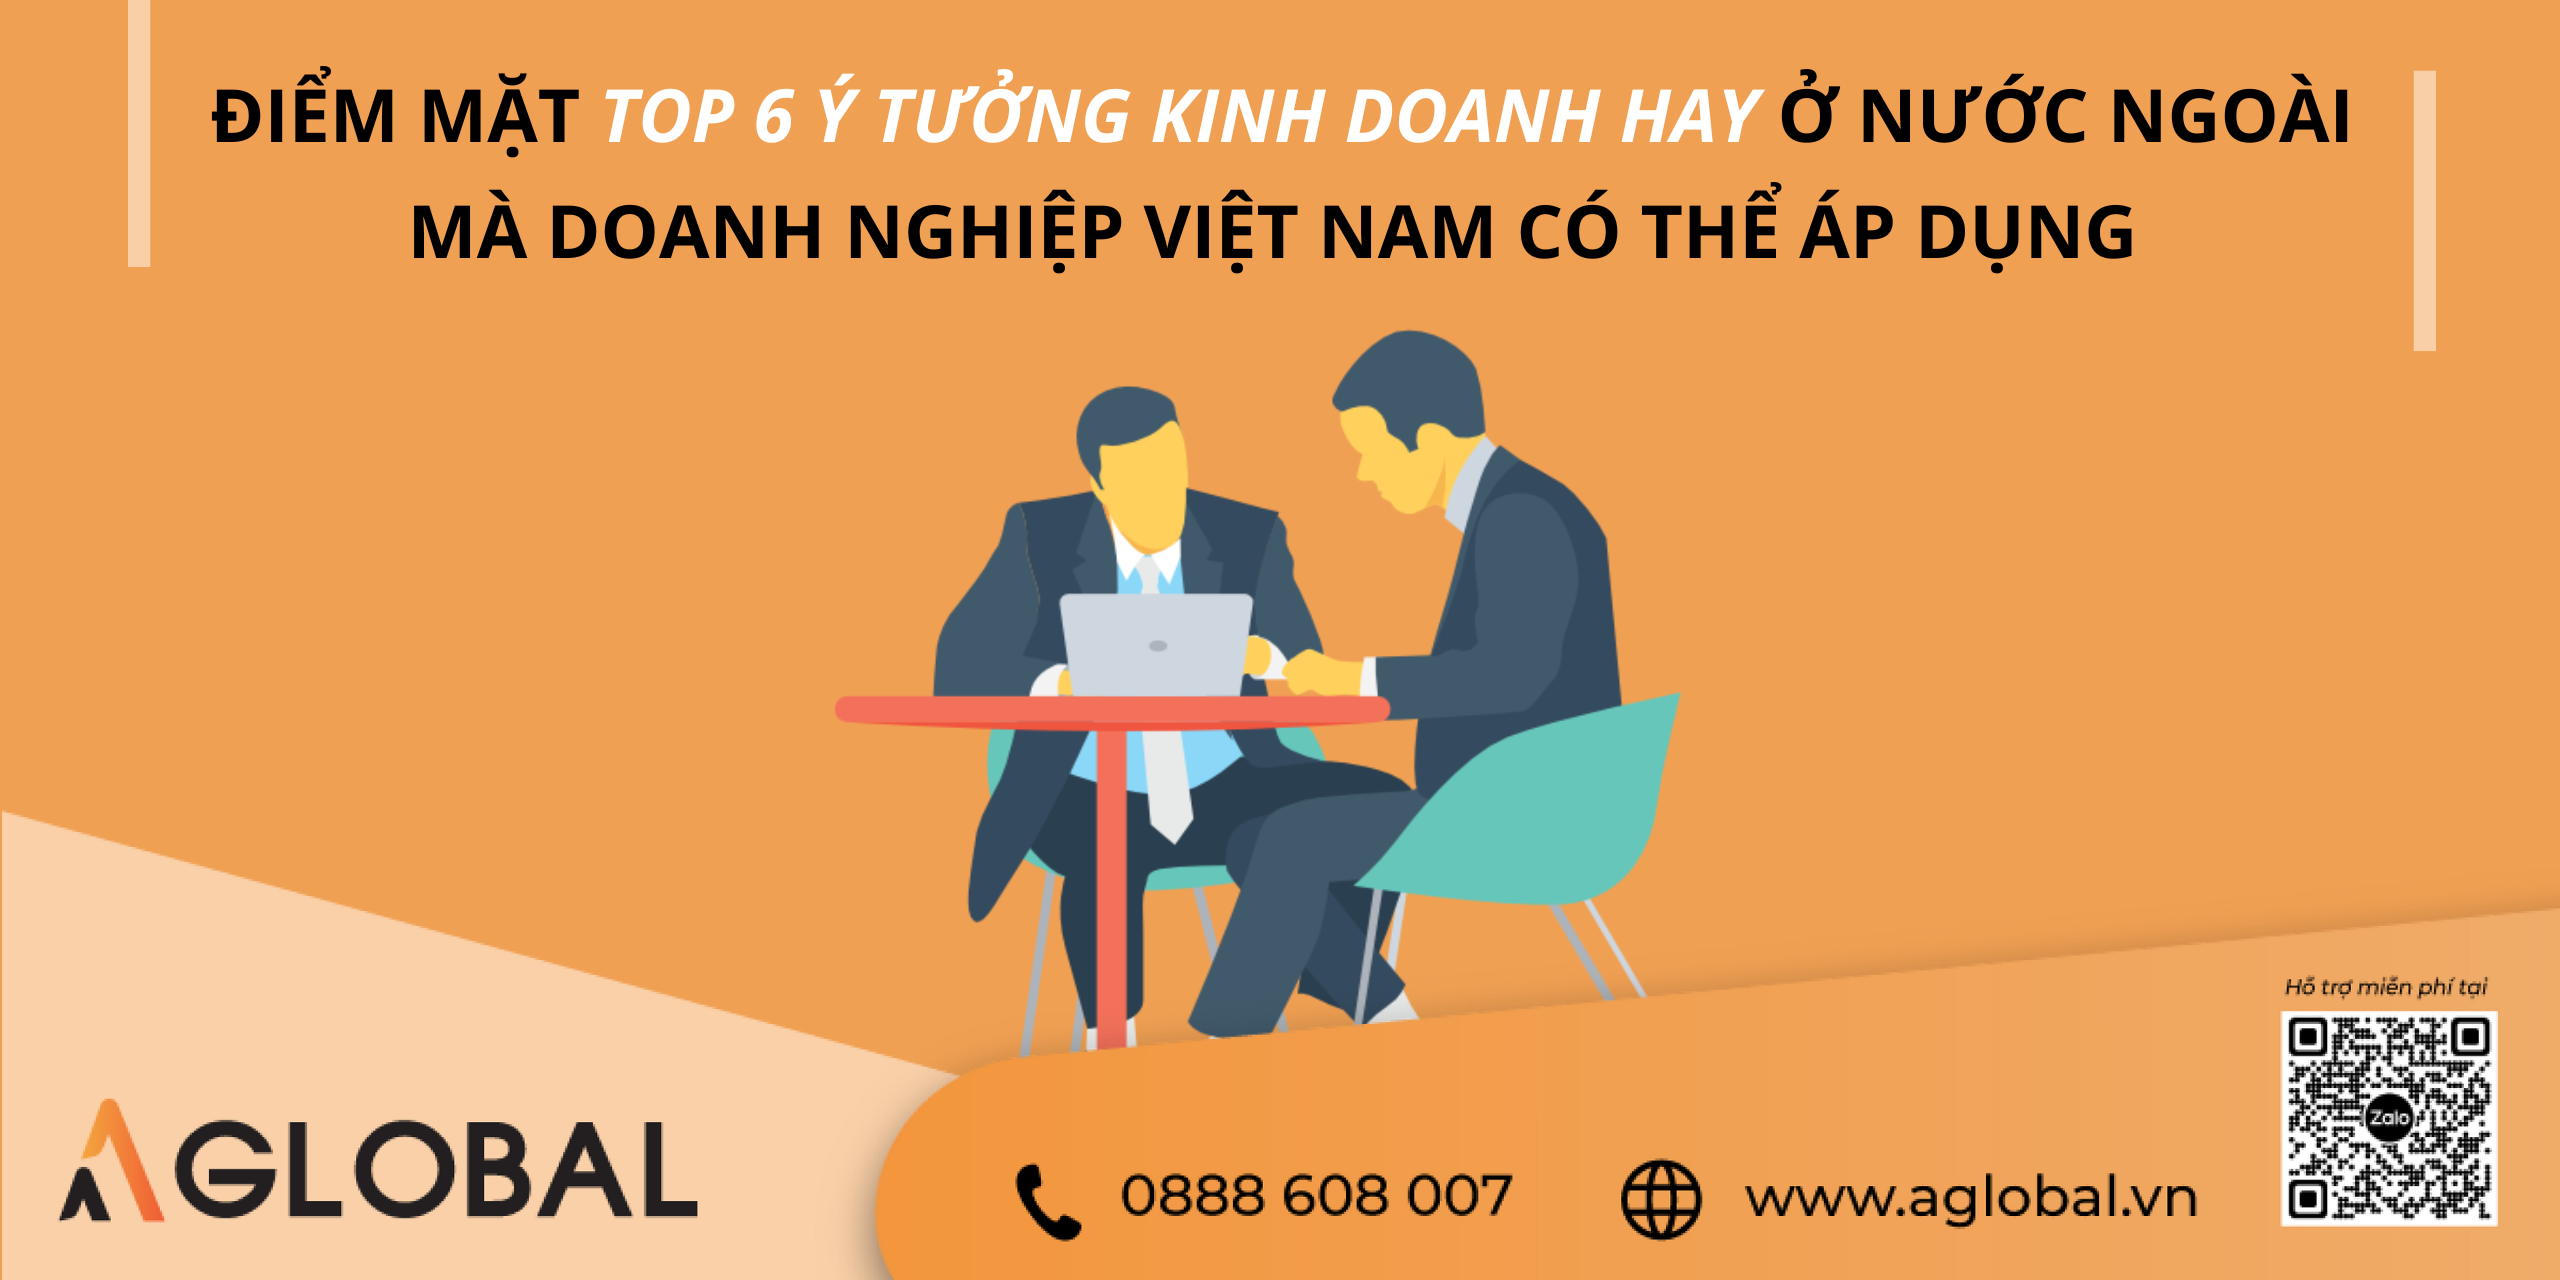 Điểm mặt top 6 ý tưởng kinh doanh hay ở nước ngoài mà doanh nghiệp Việt Nam  có thể áp dụng